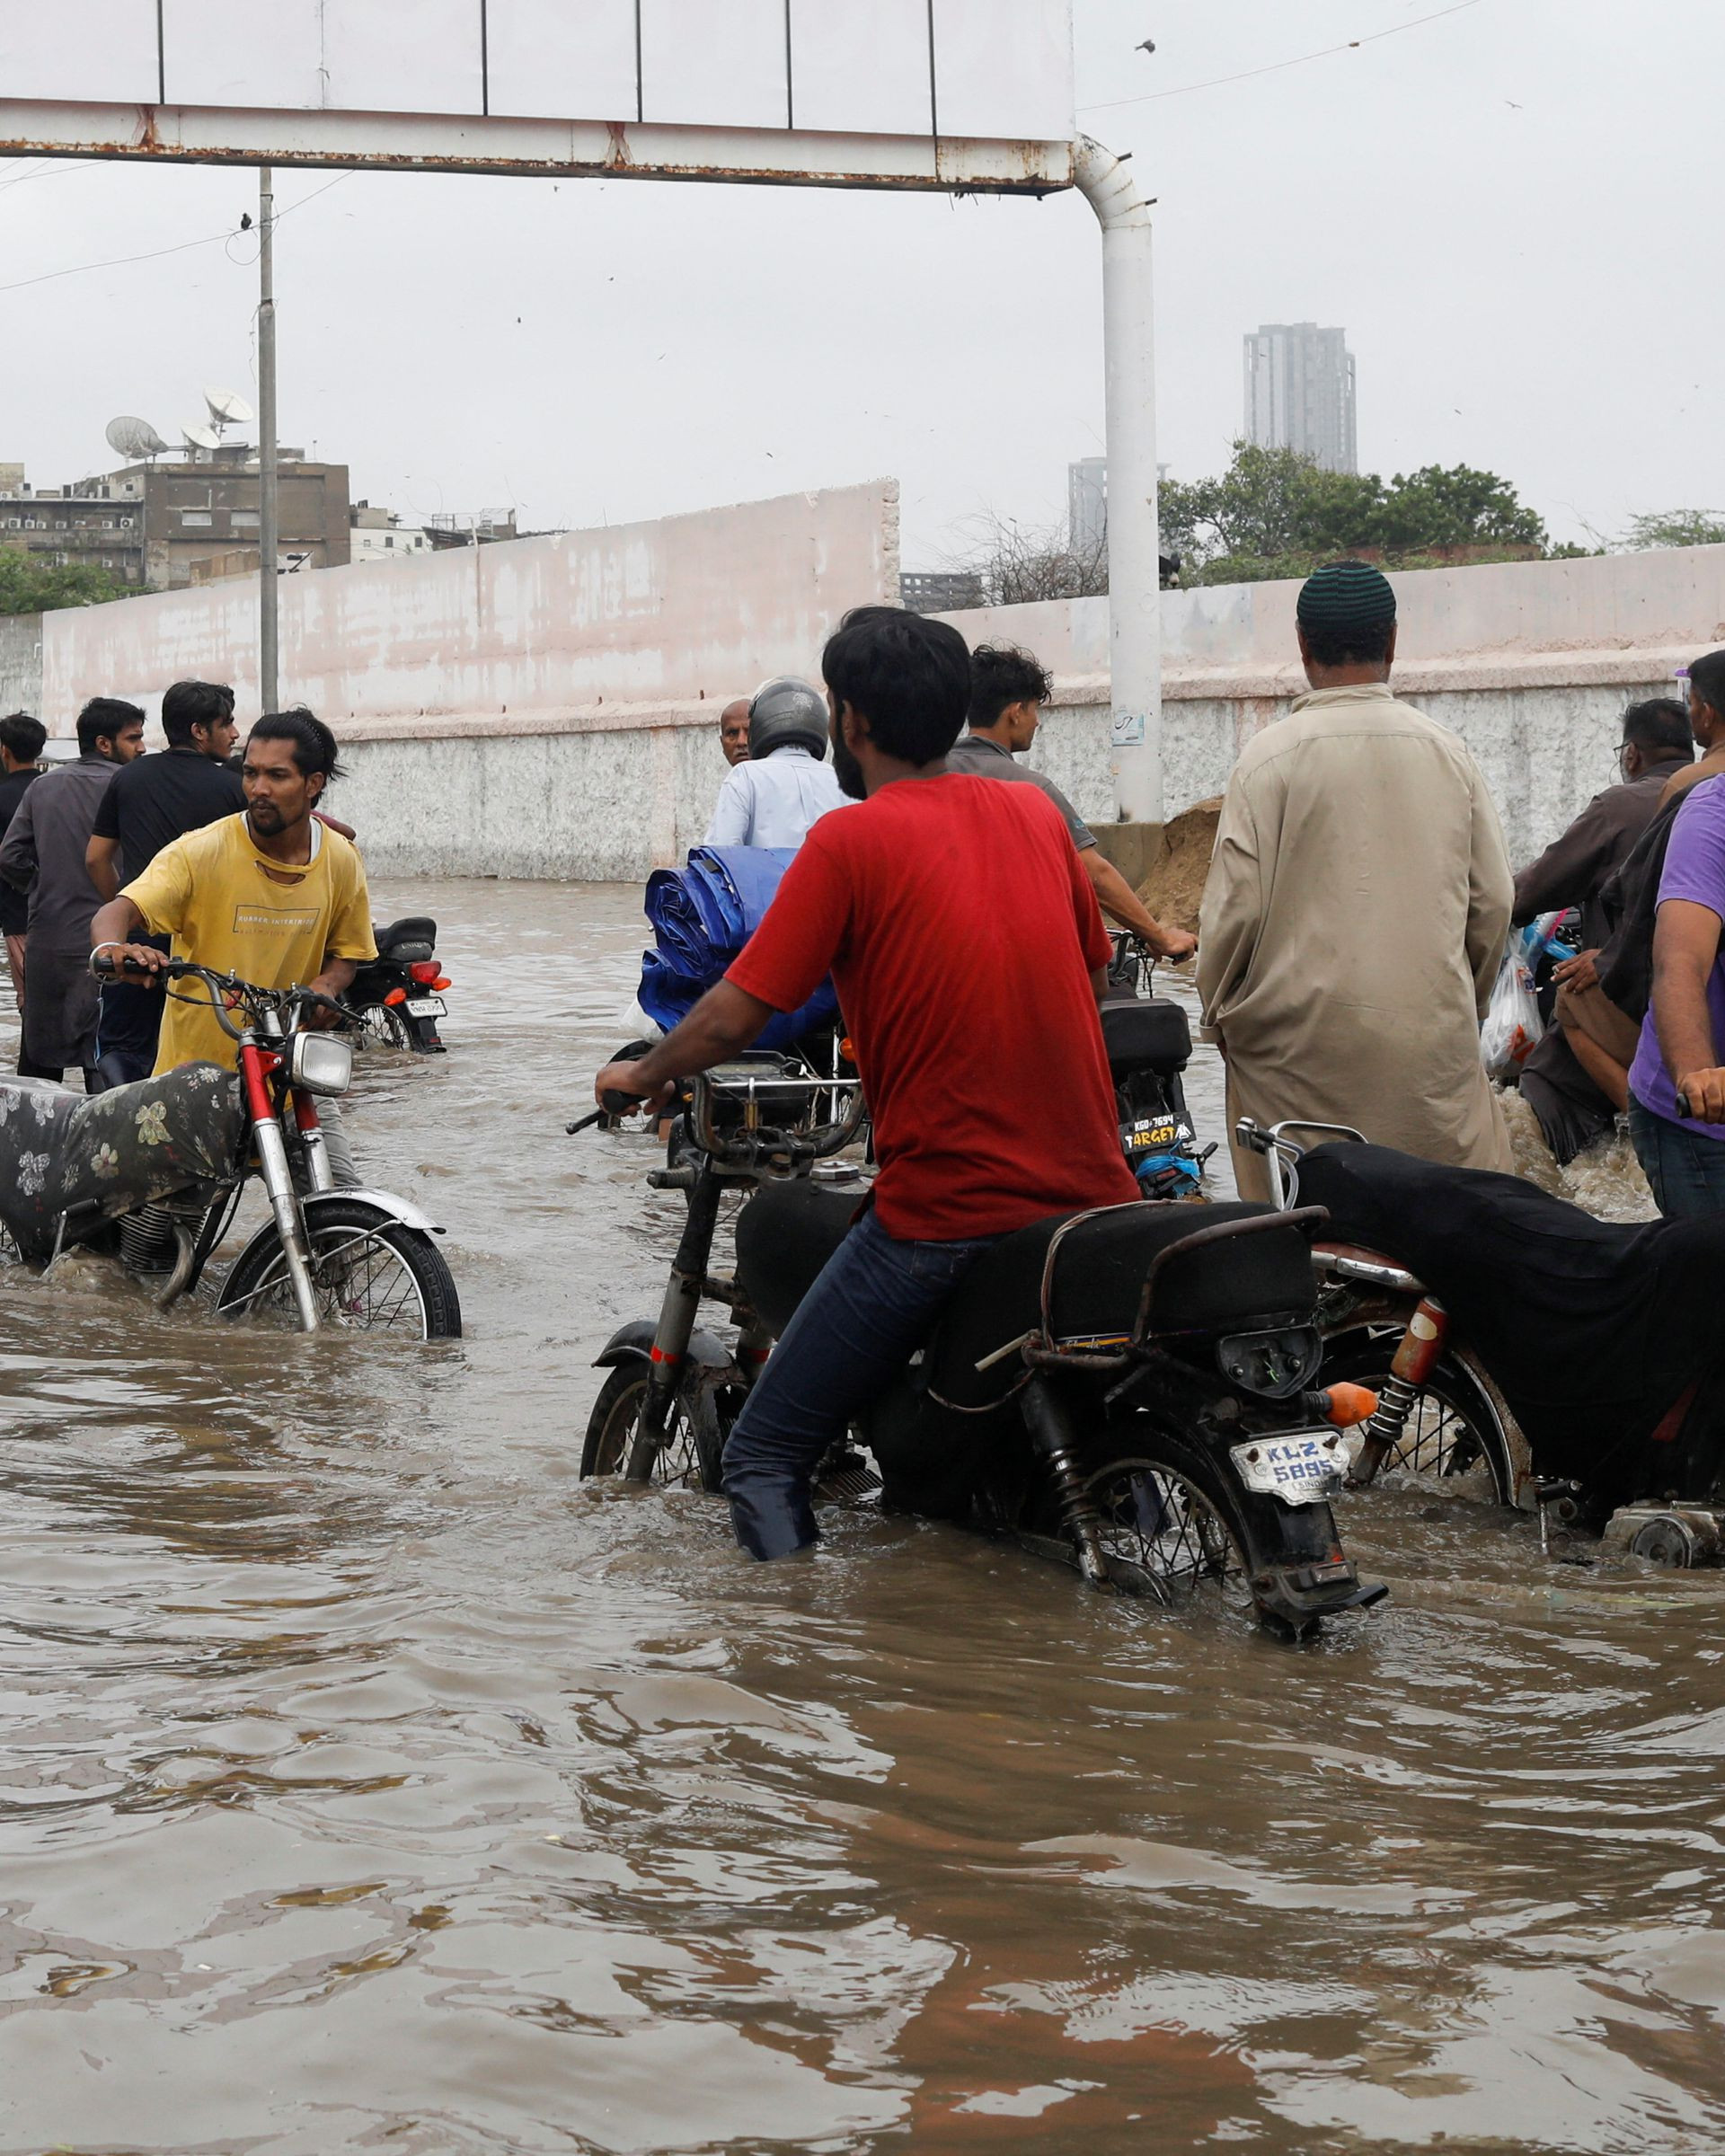 Xe cộ ngập nước trên các con đường Pakistan. Ảnh: Getty.